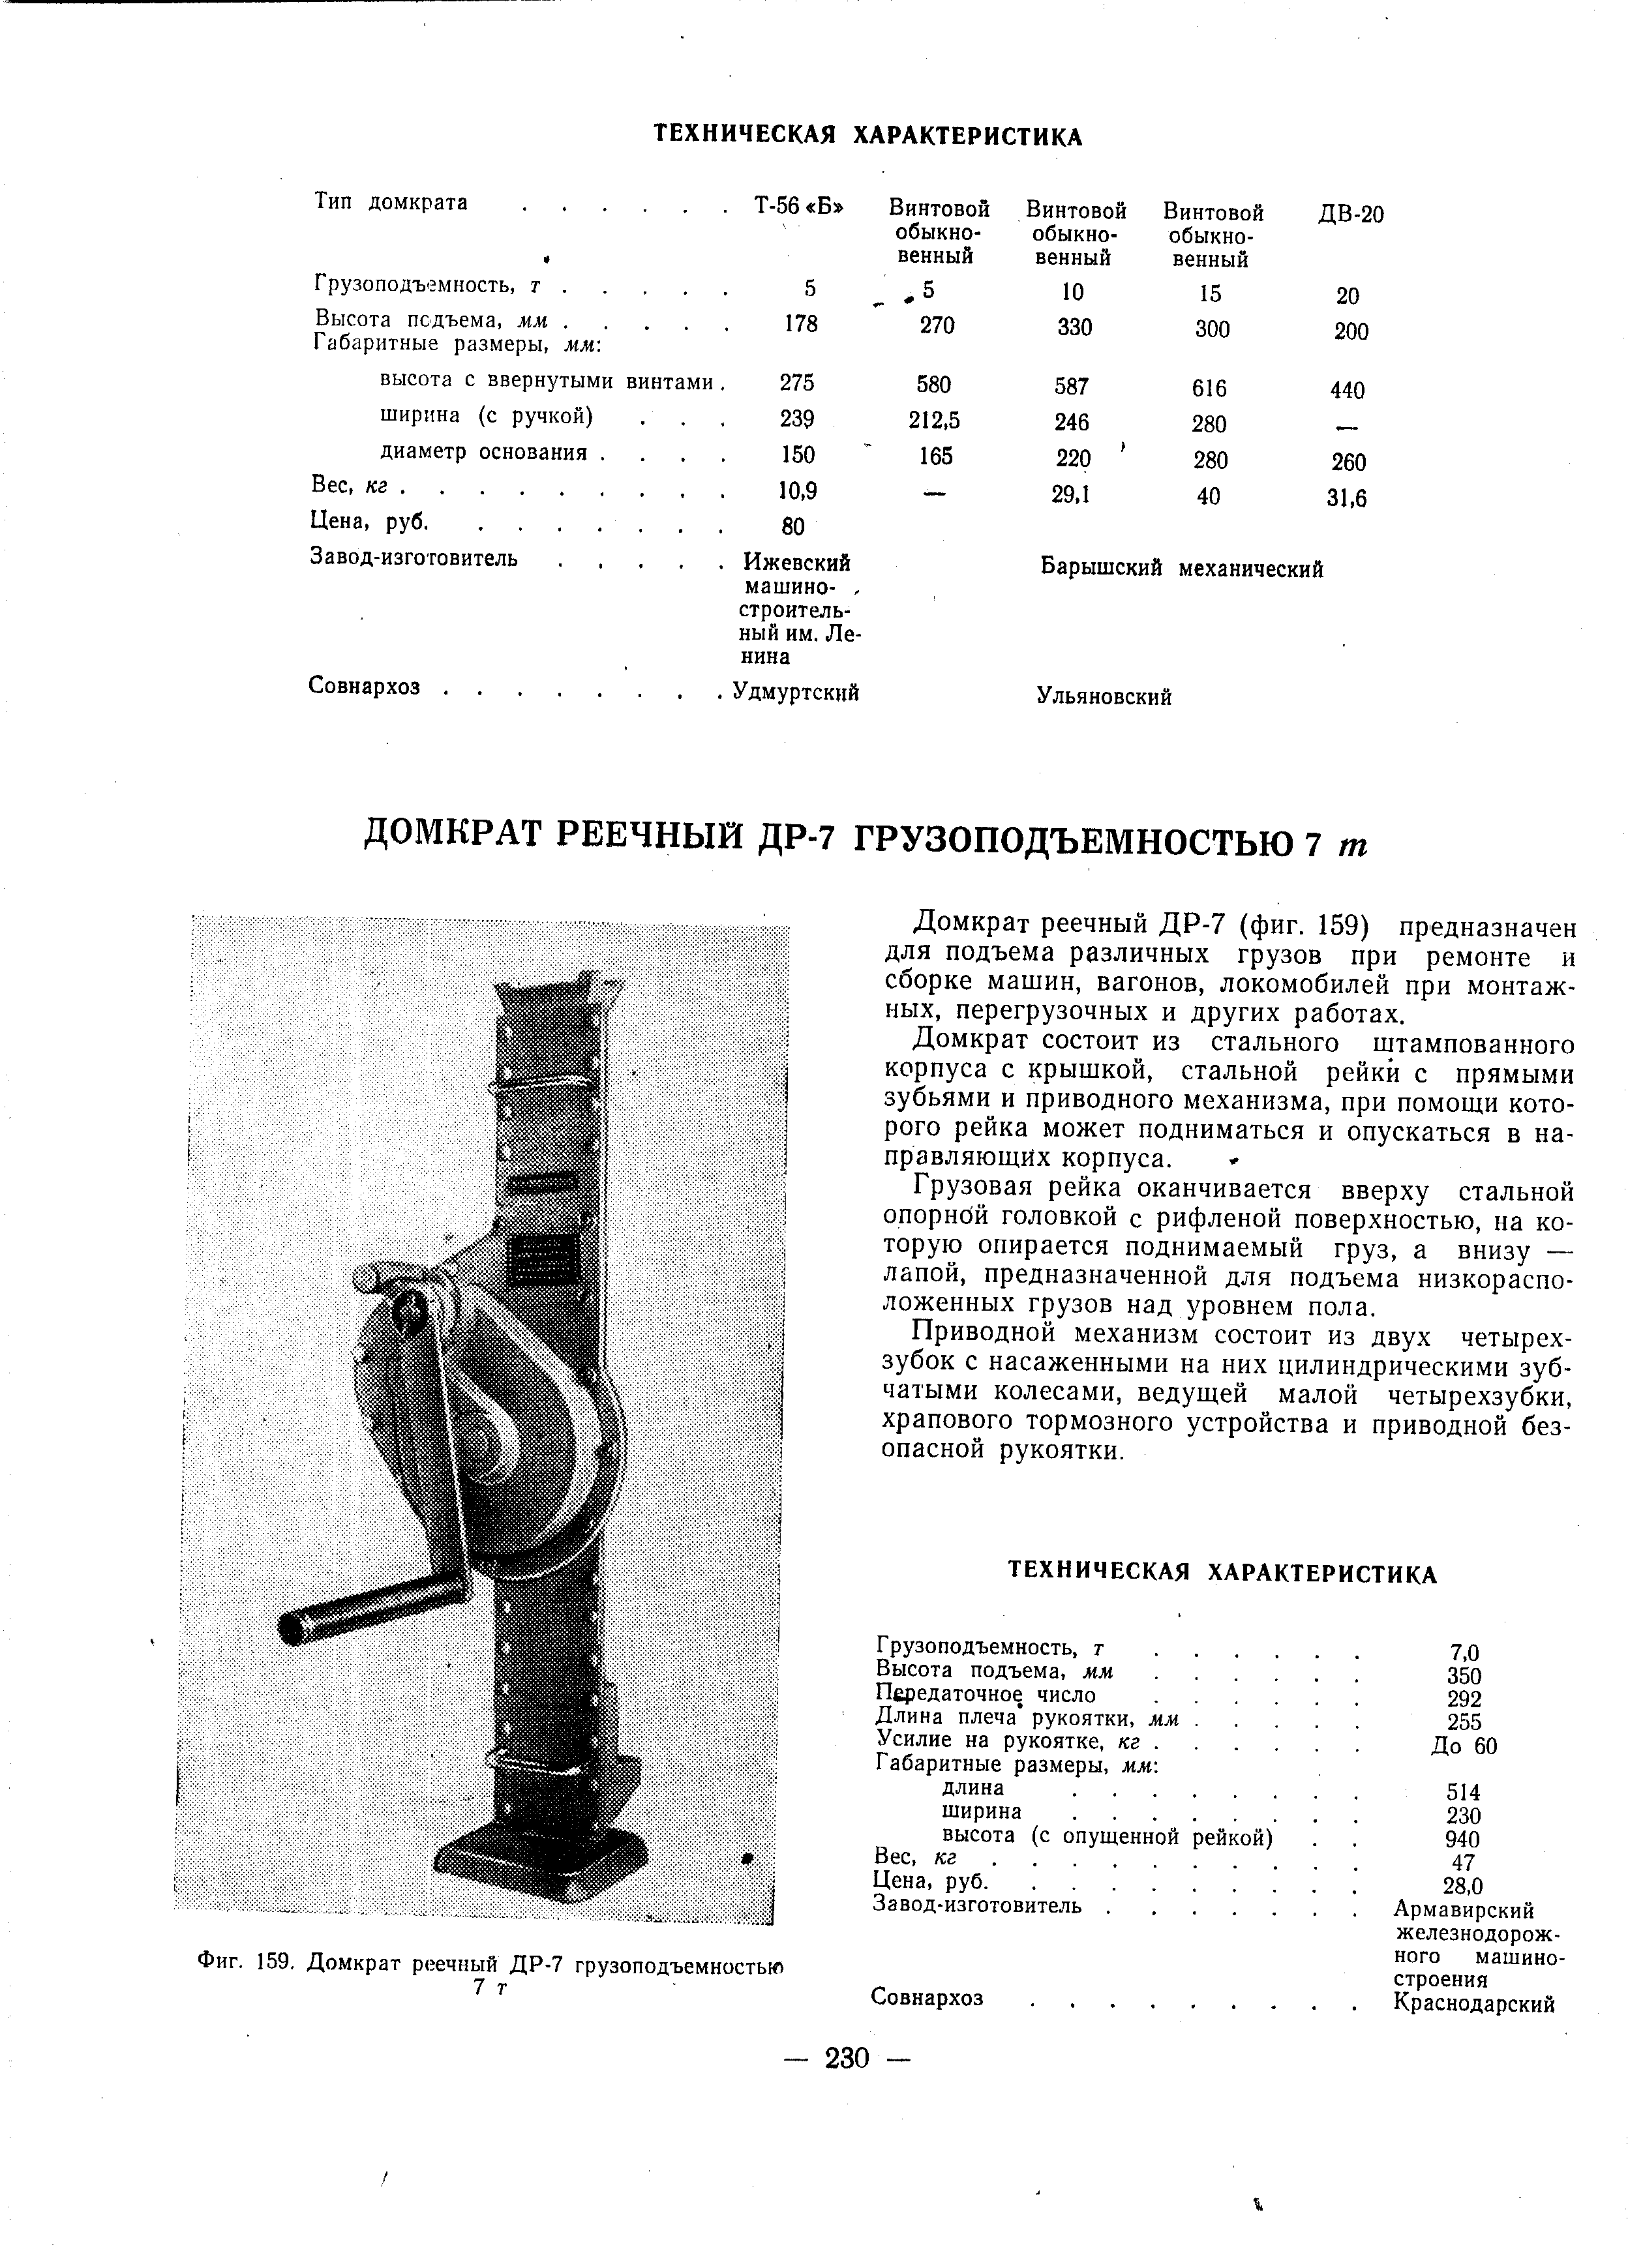 Фиг. 159, Домкрат реечный ДР-7 грузоподъемностью
